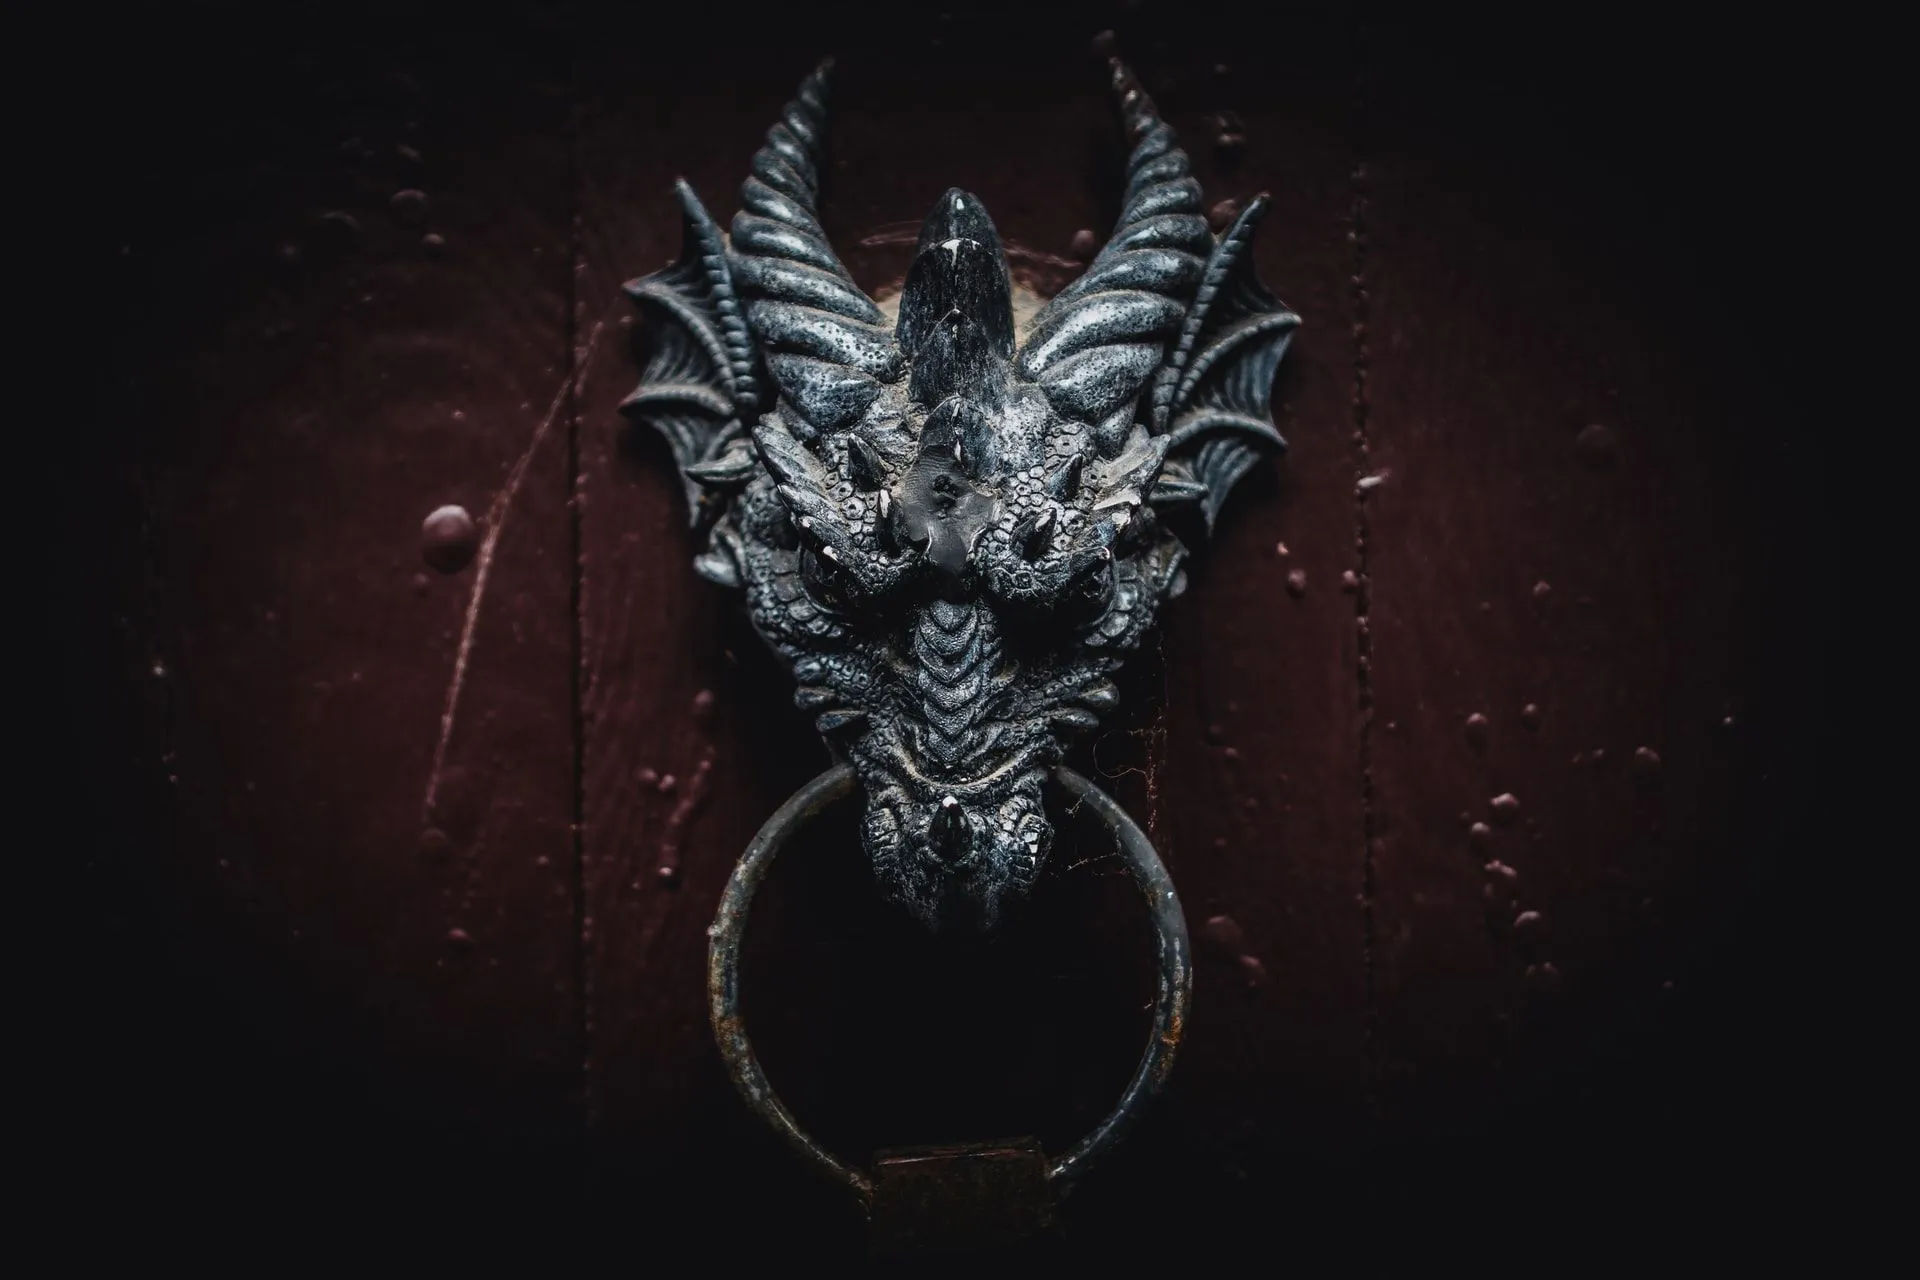 Dragon shaped door handle